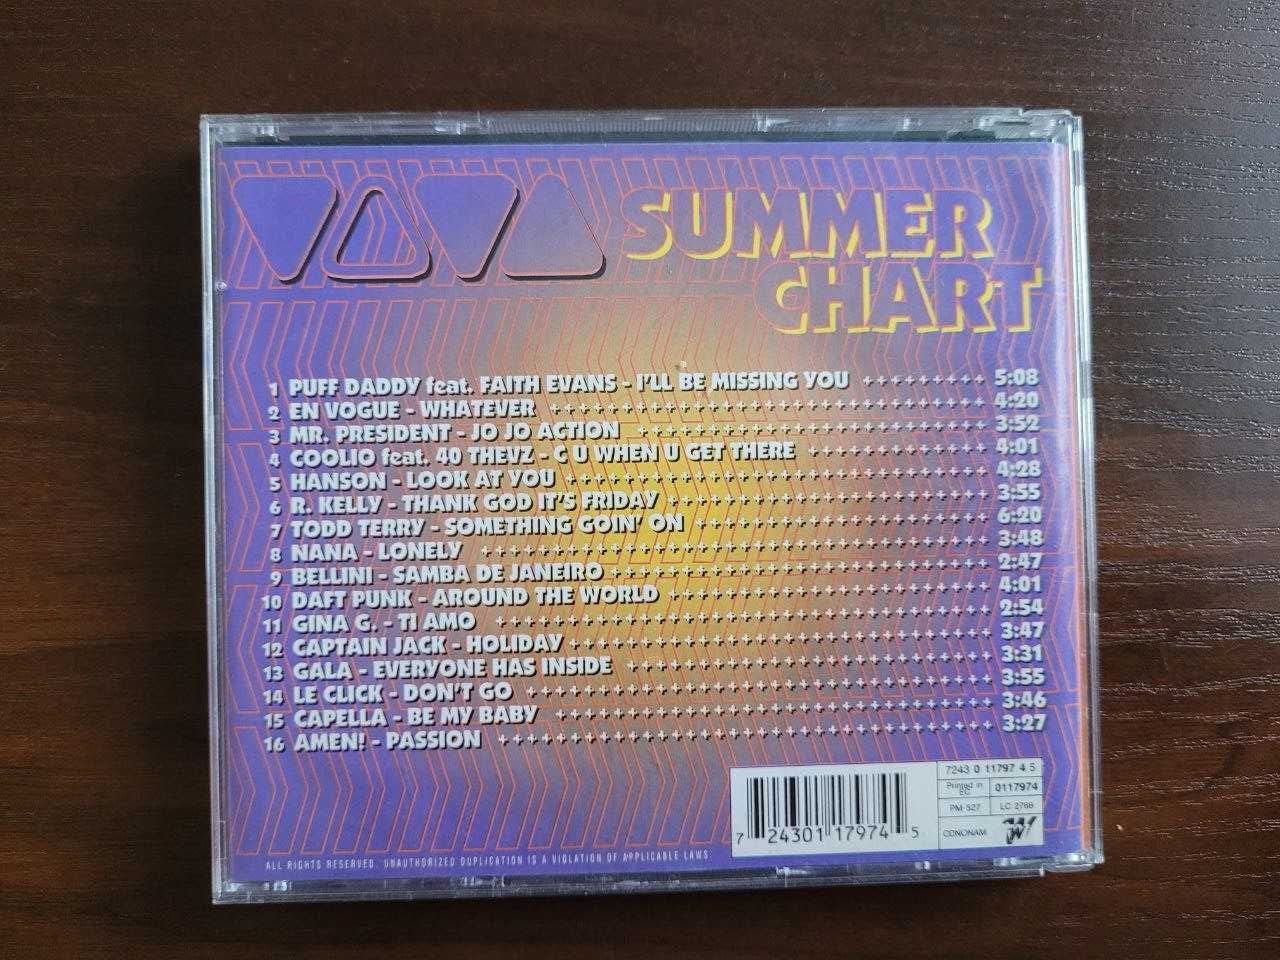 VIVA Summer Chart CD